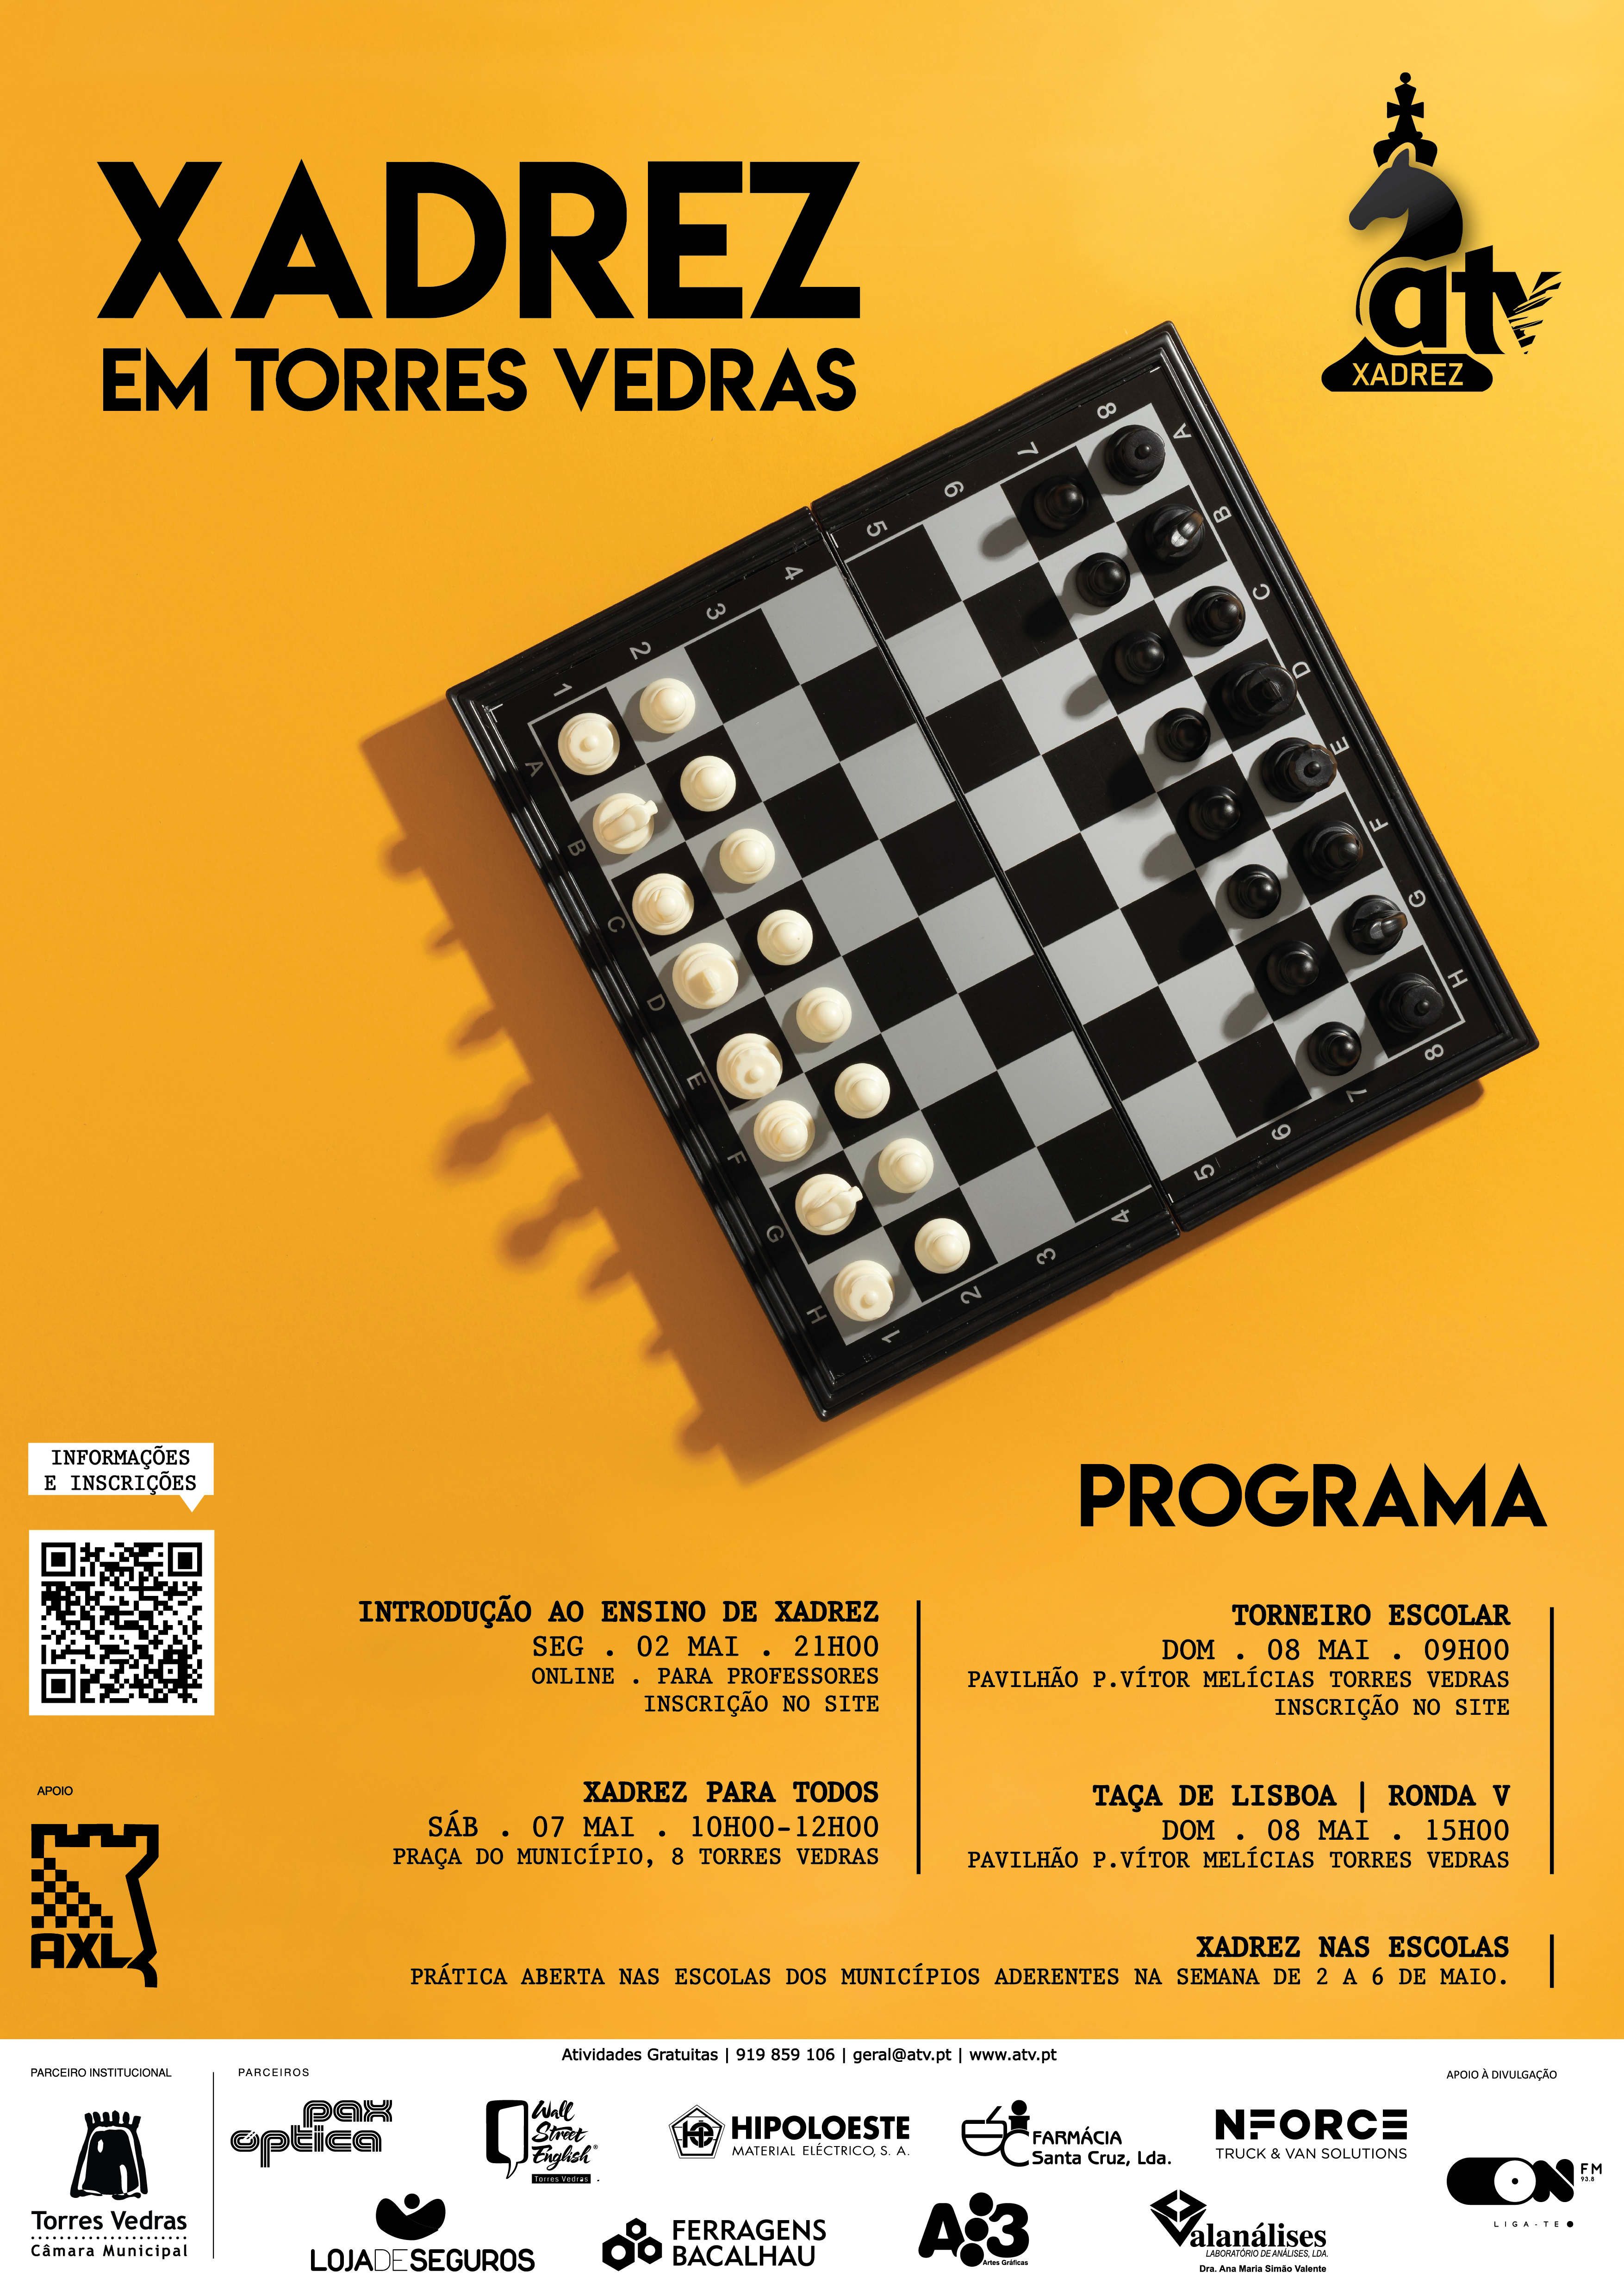 Associação de xadrez de Lisboa